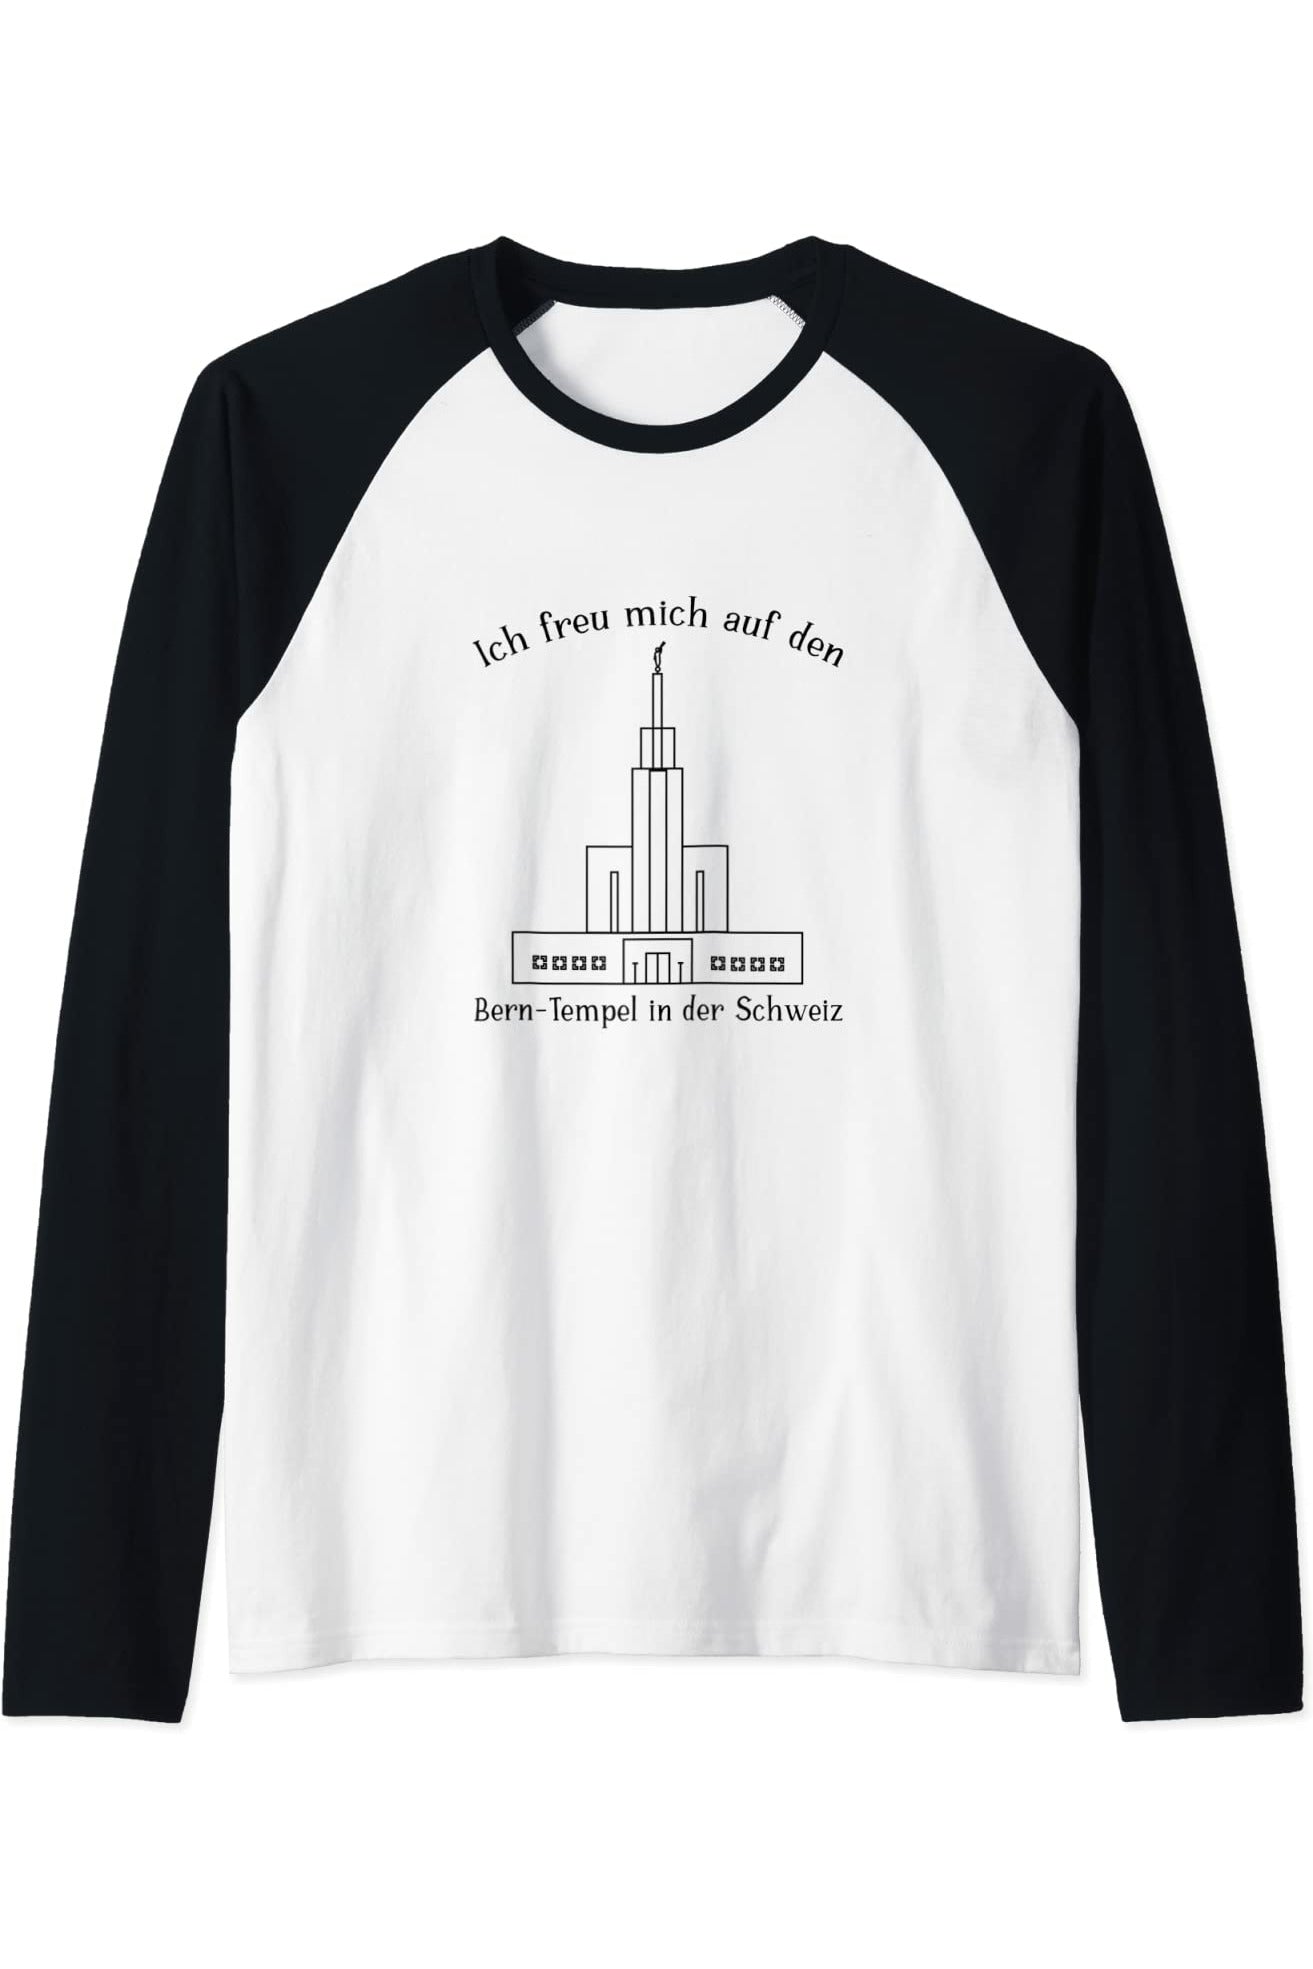 Bern Schweiz Tempel, Ich liebe meinen Tempel zu sehen Raglan T-Shirt